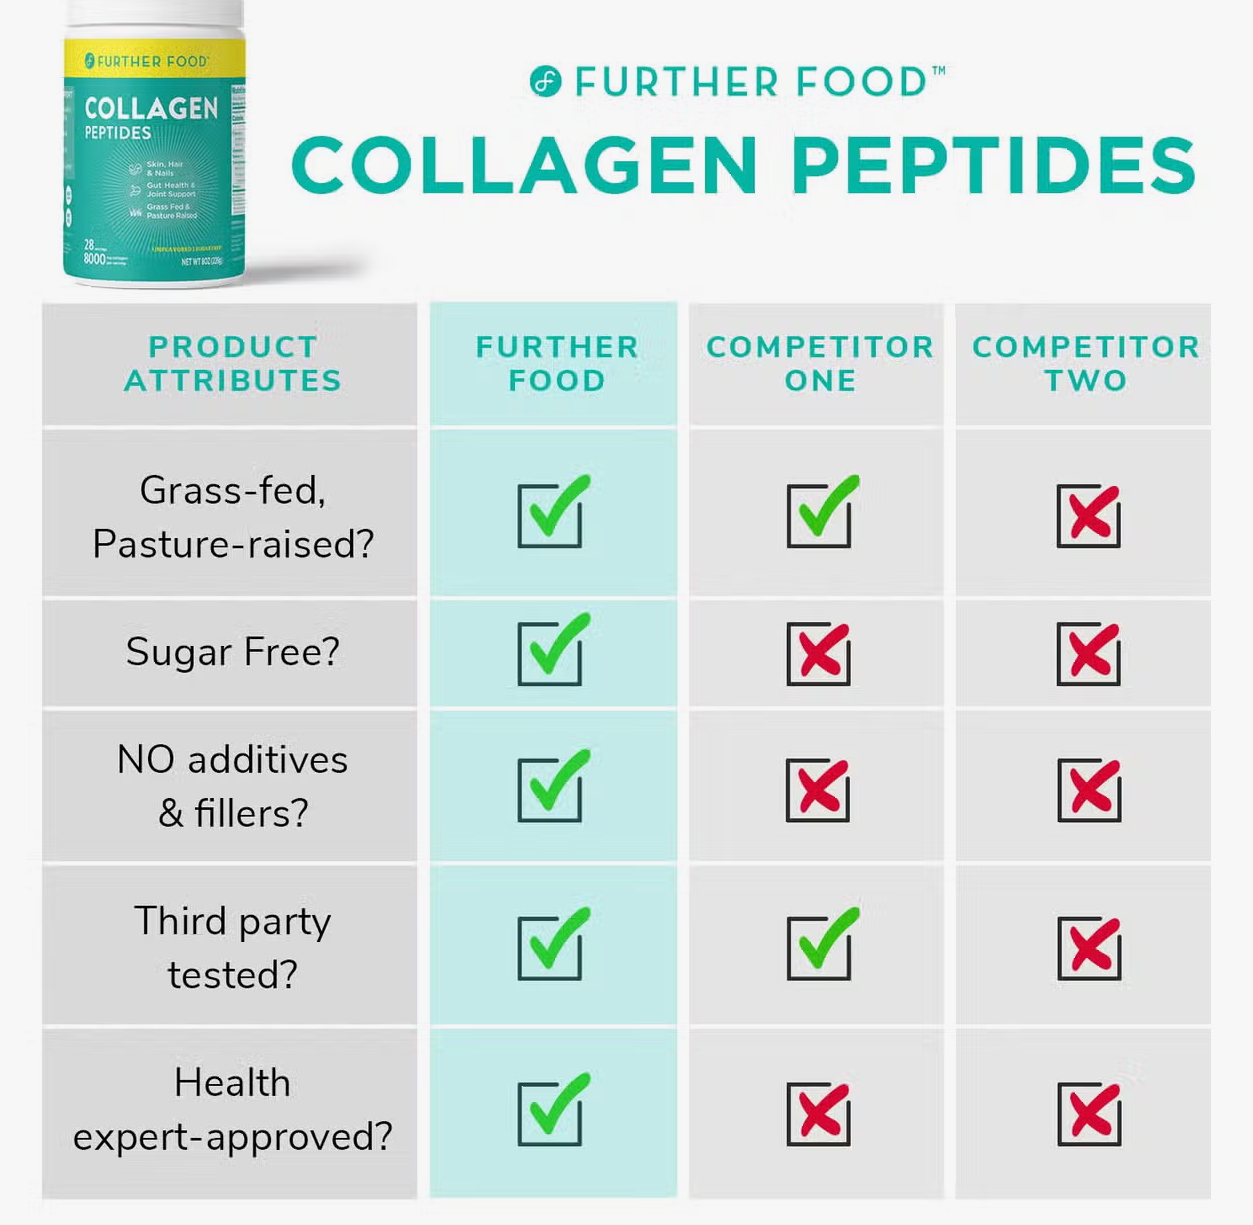 *Collagen Peptides